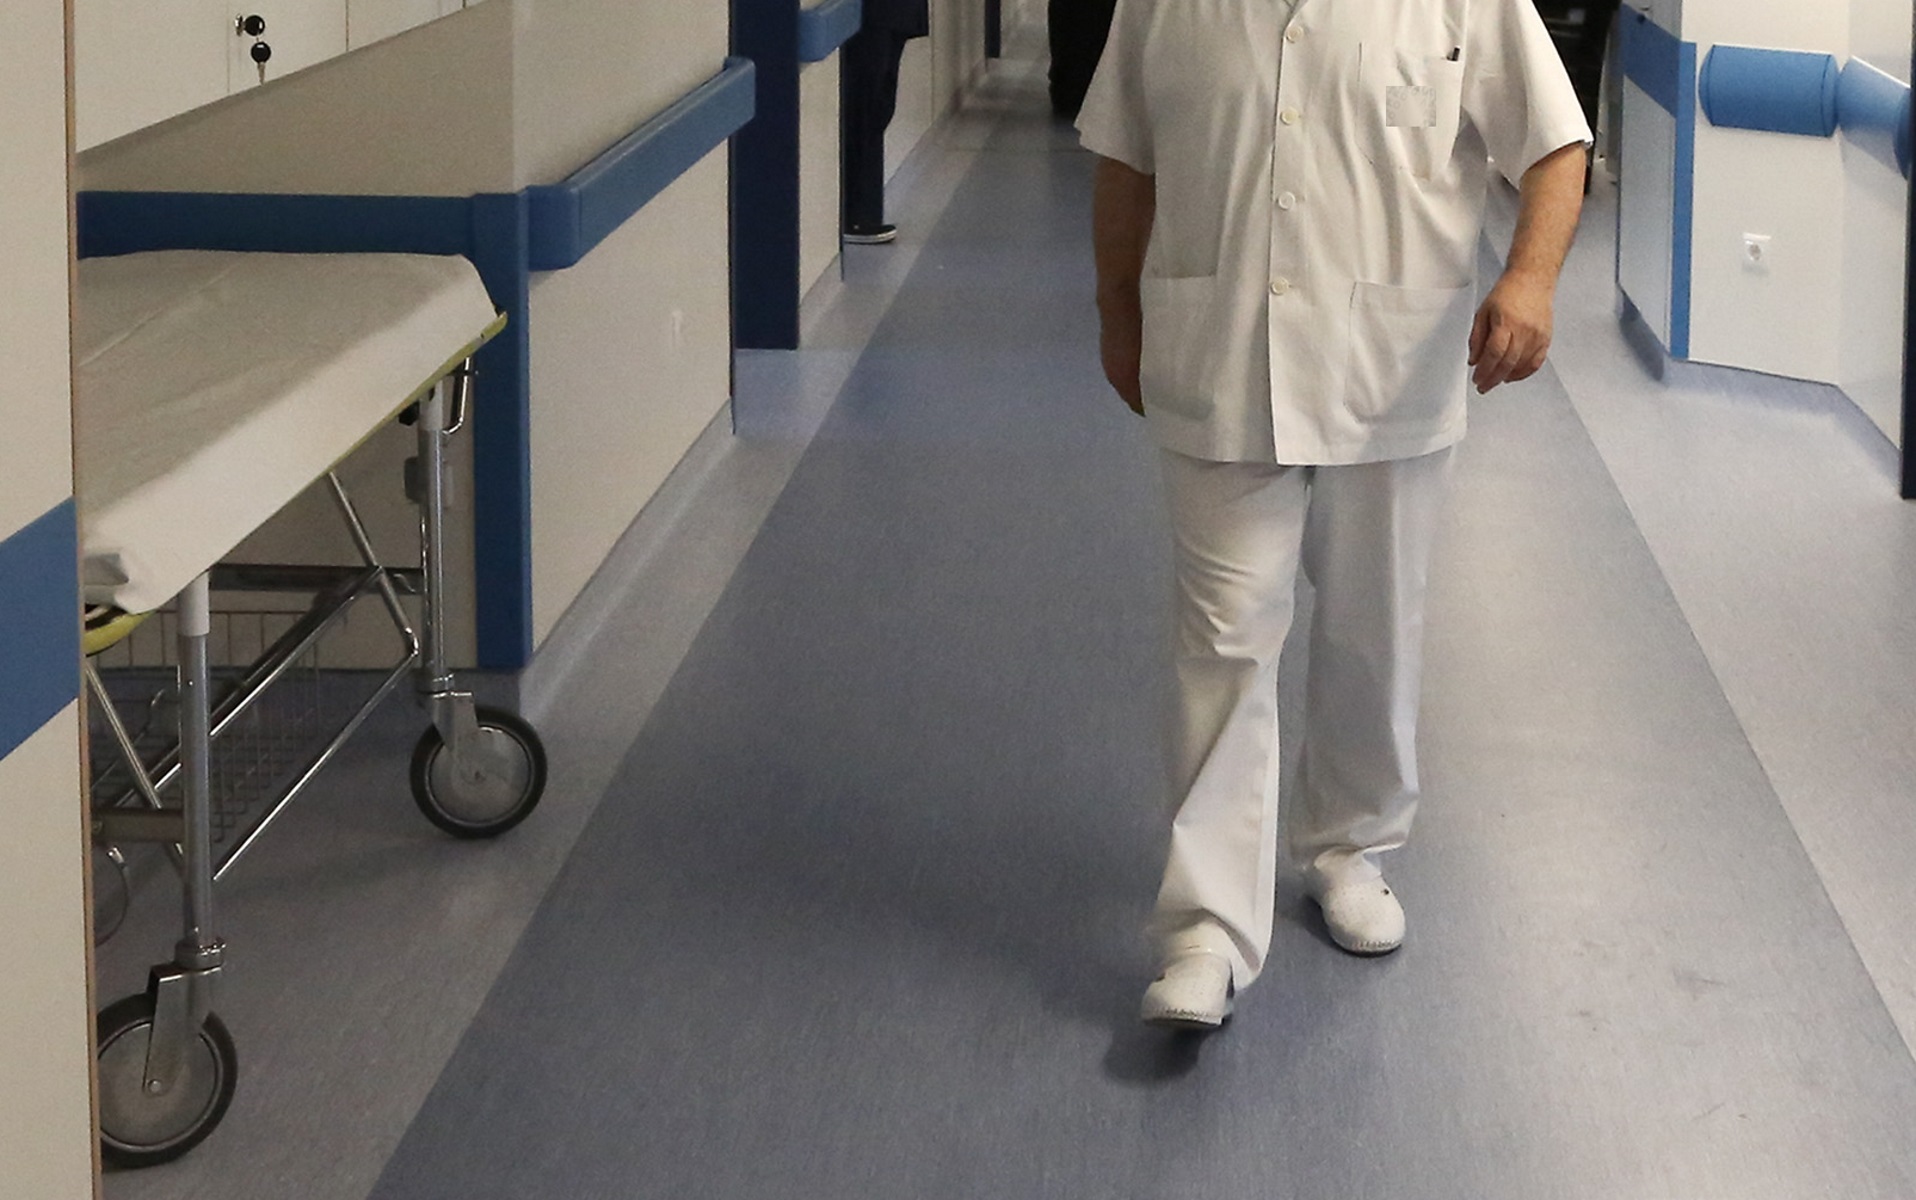 Νοσοκομείο Πέλλας: Διαψεύδουν ότι γίνεται διαλογή ασθενών κορονοϊού